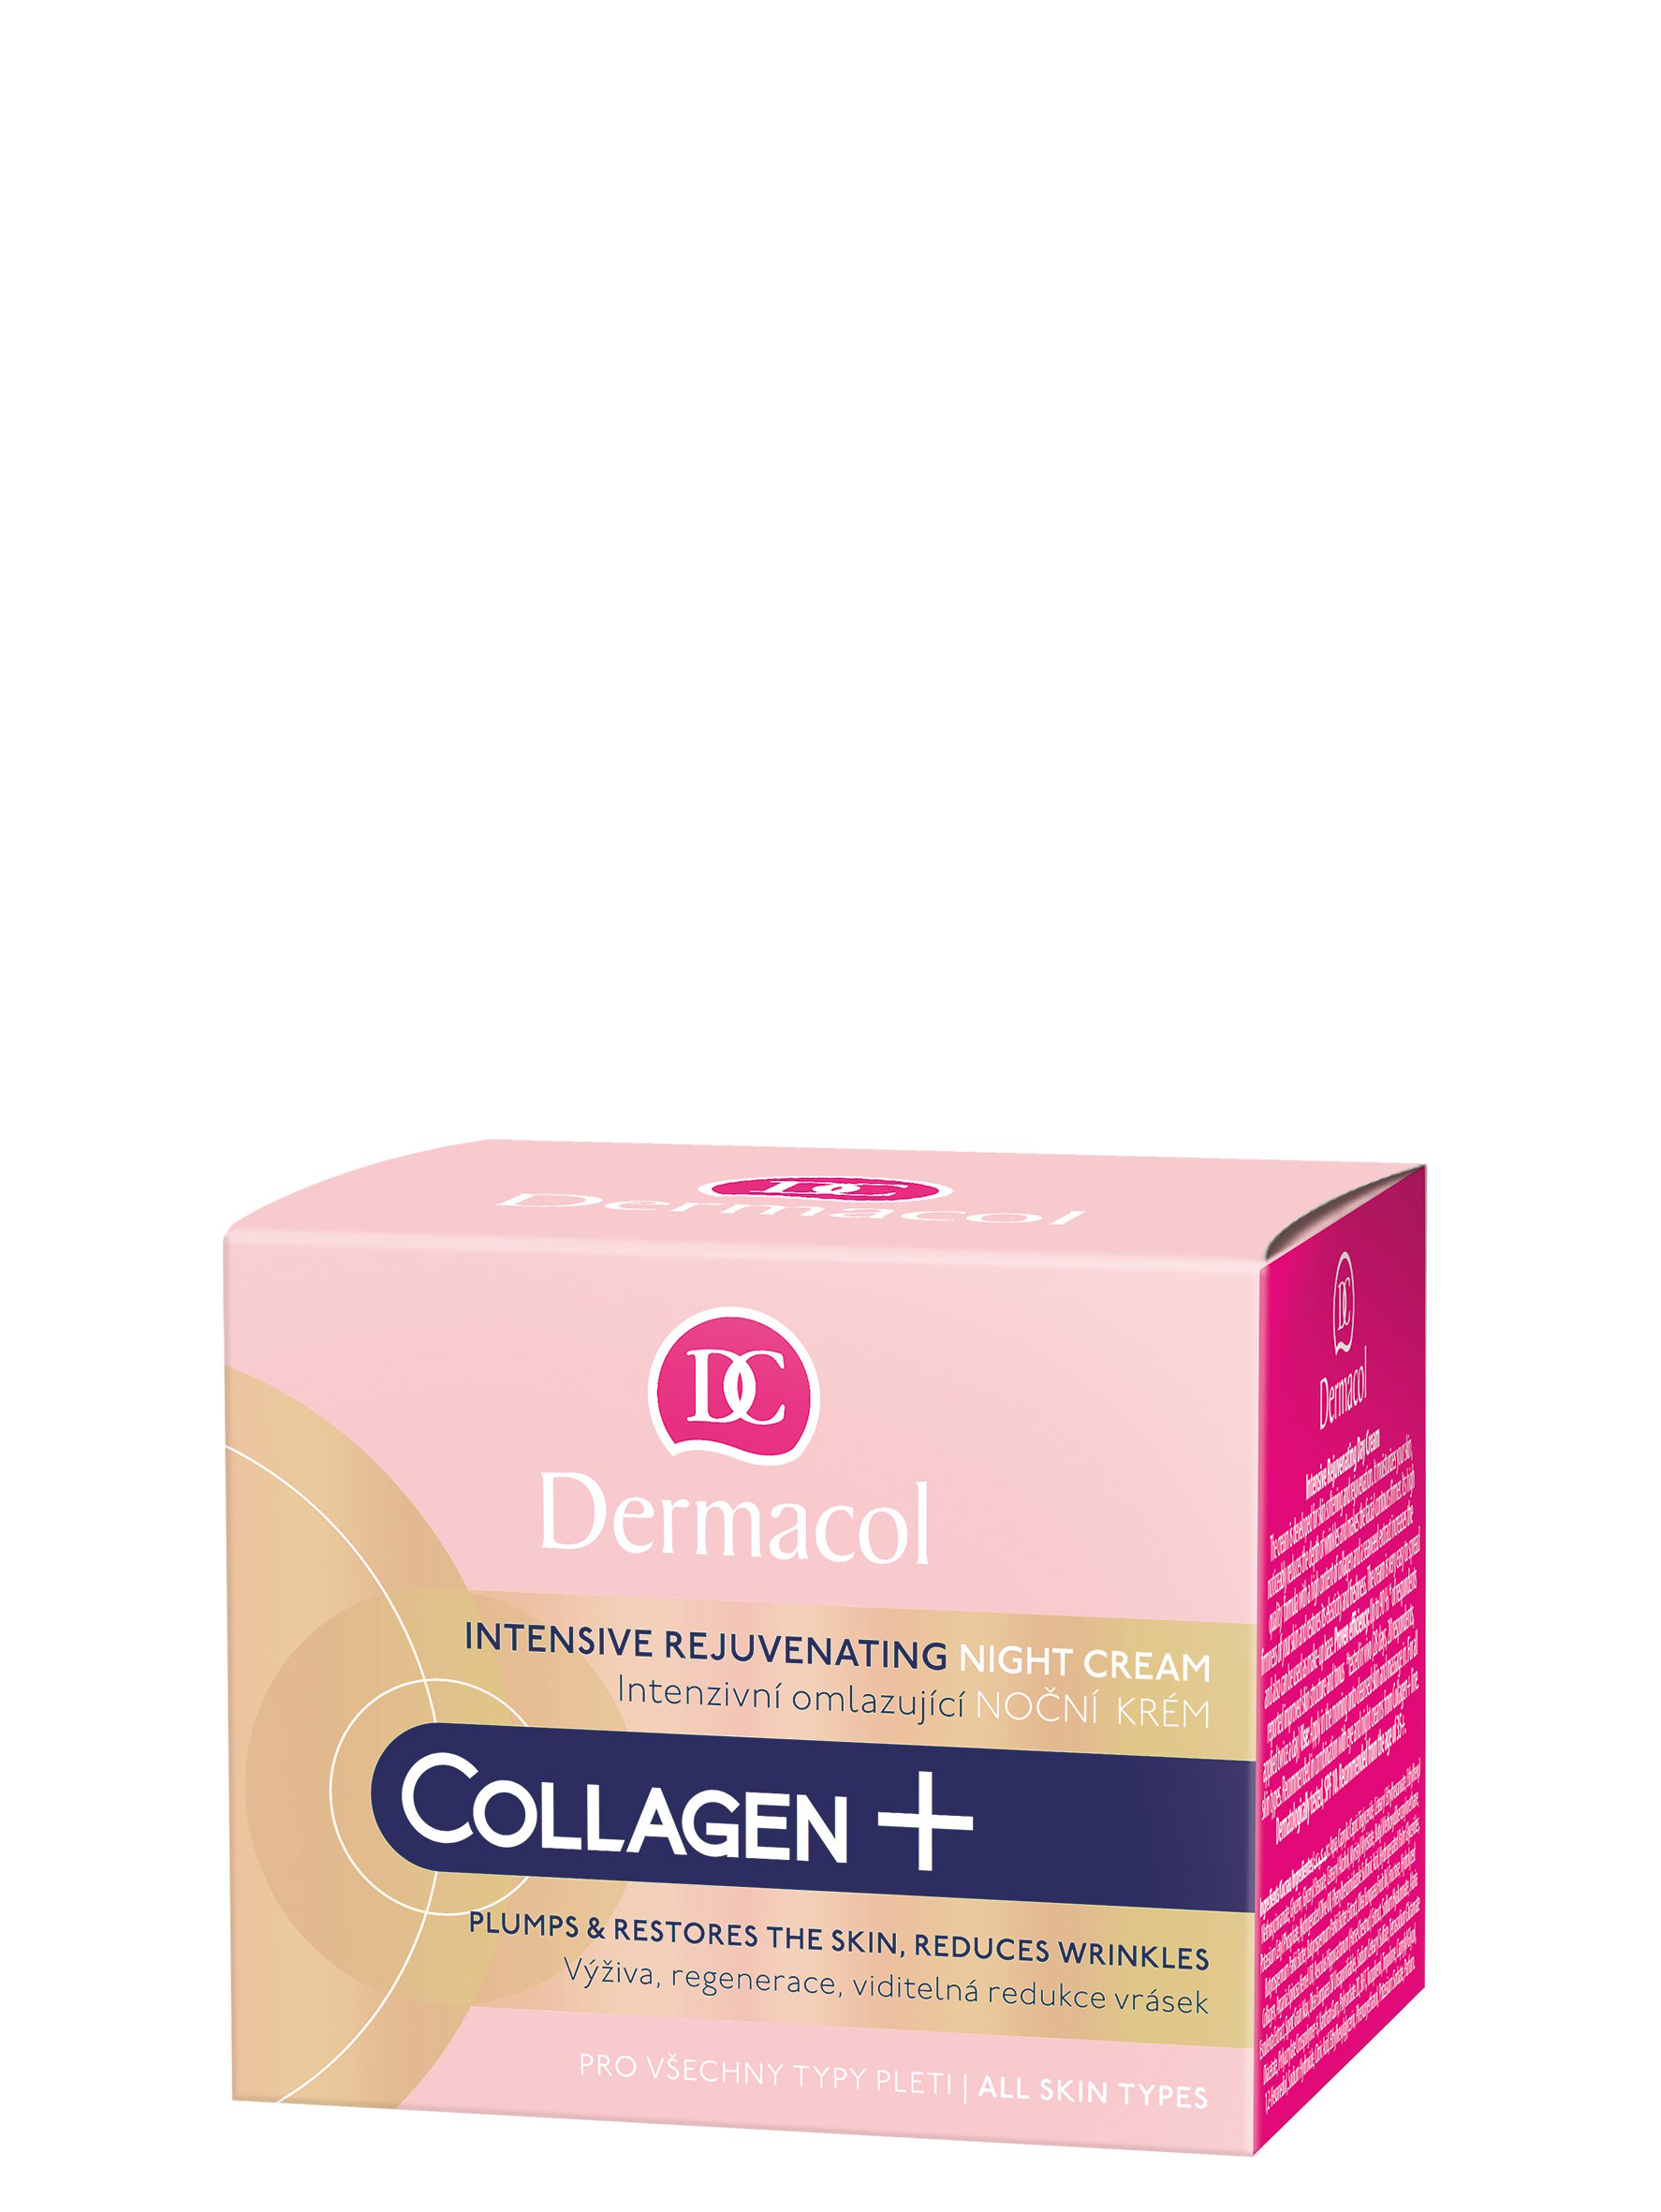 Интенсивно-омолаживающий ночной крем для лица Dermacol Collagen Plus, 50 мл - фото 1